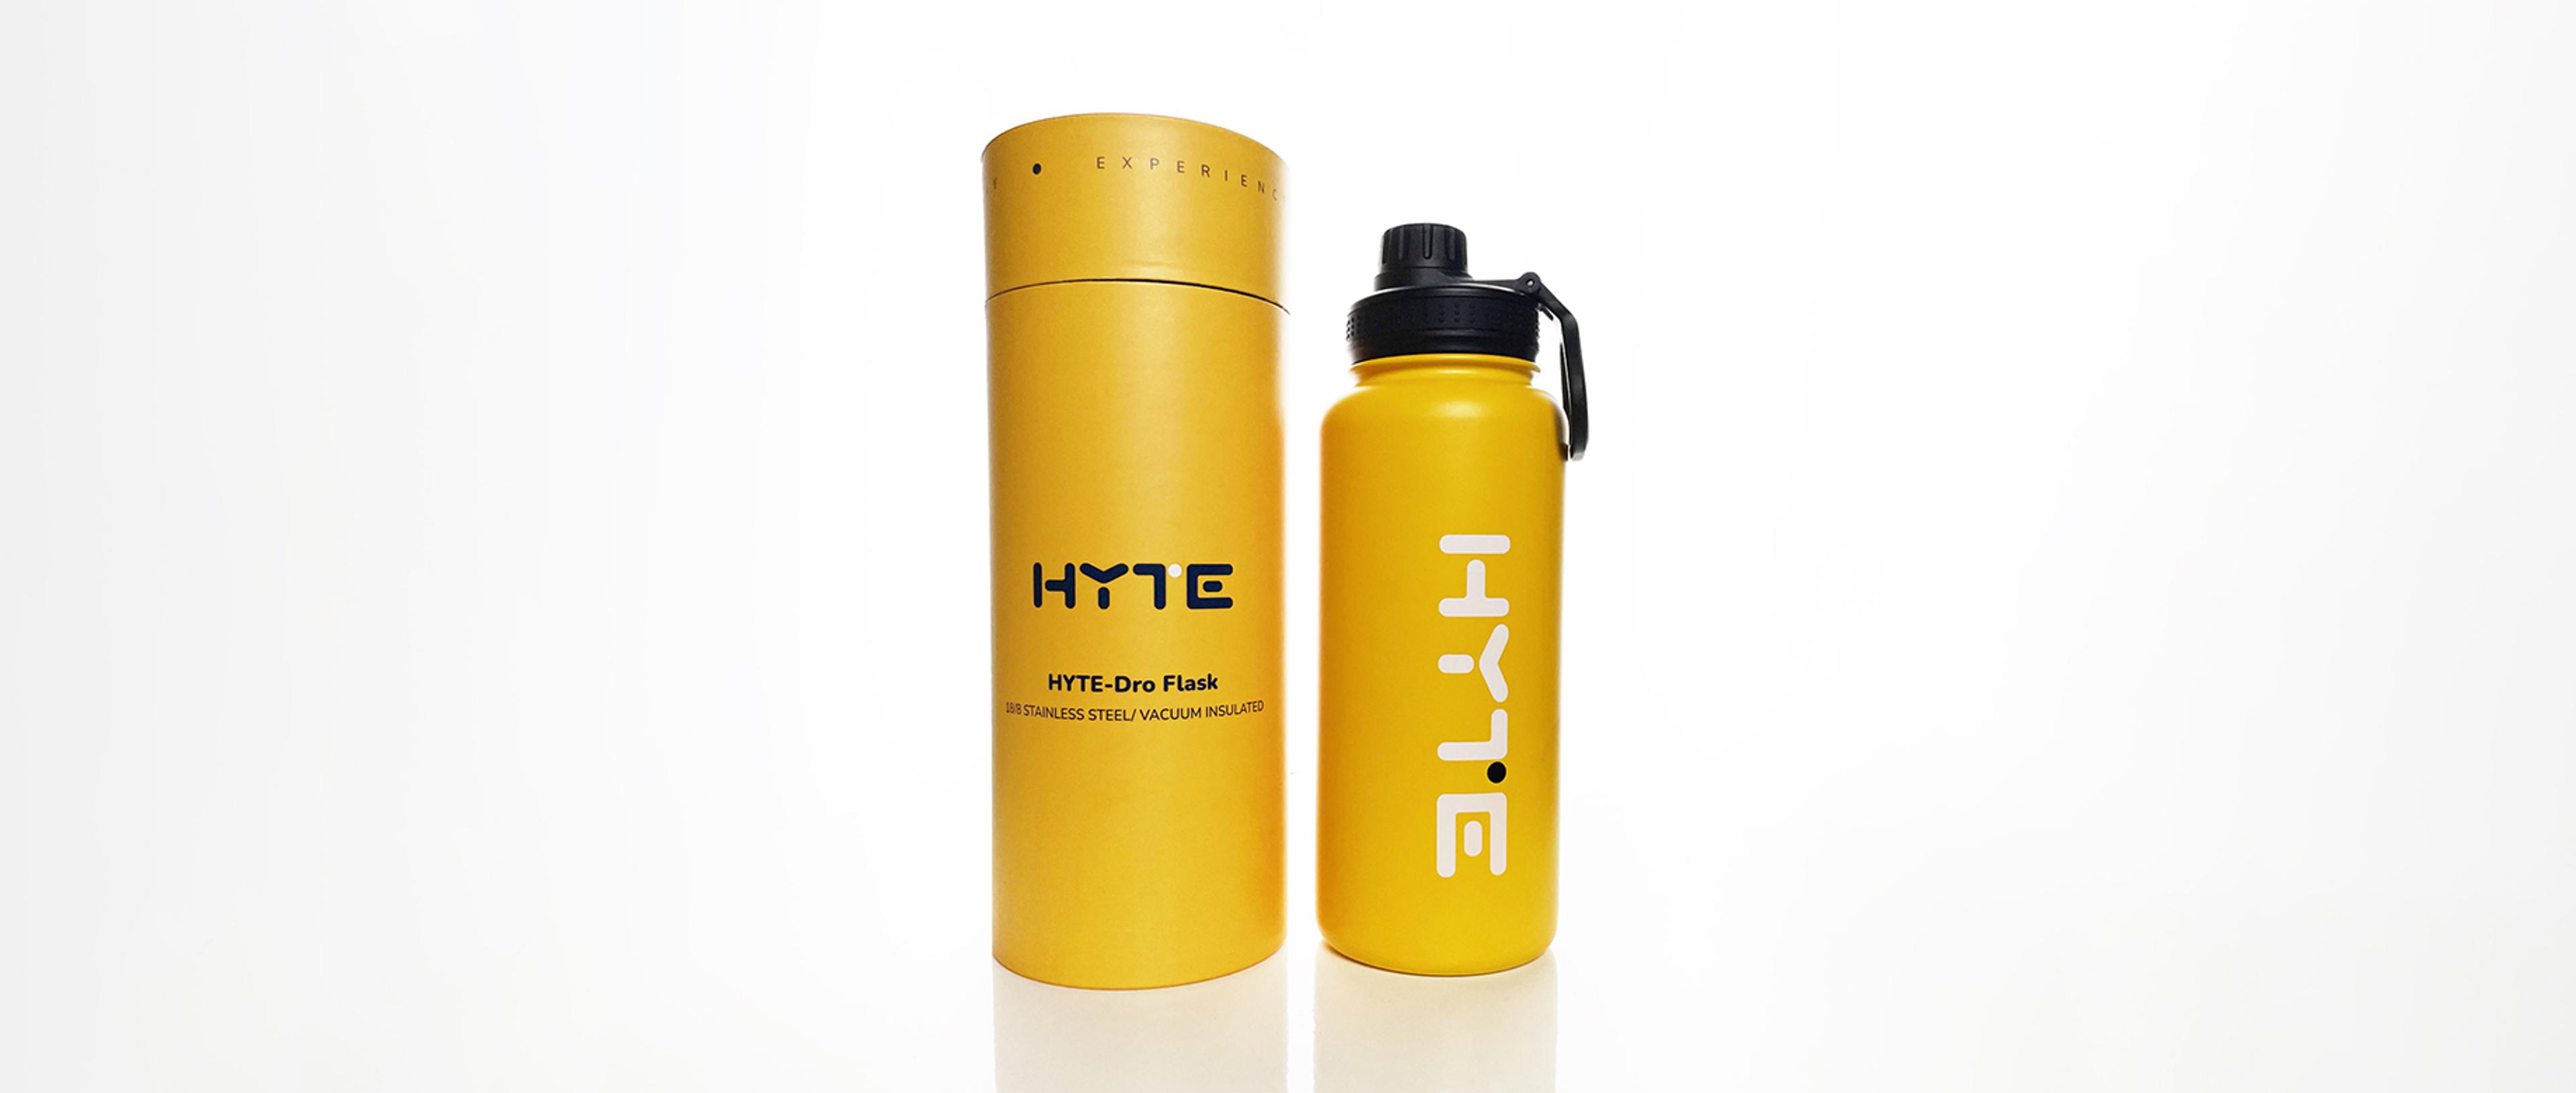 HYTE-dro-Flask 32 oz Water Bottle